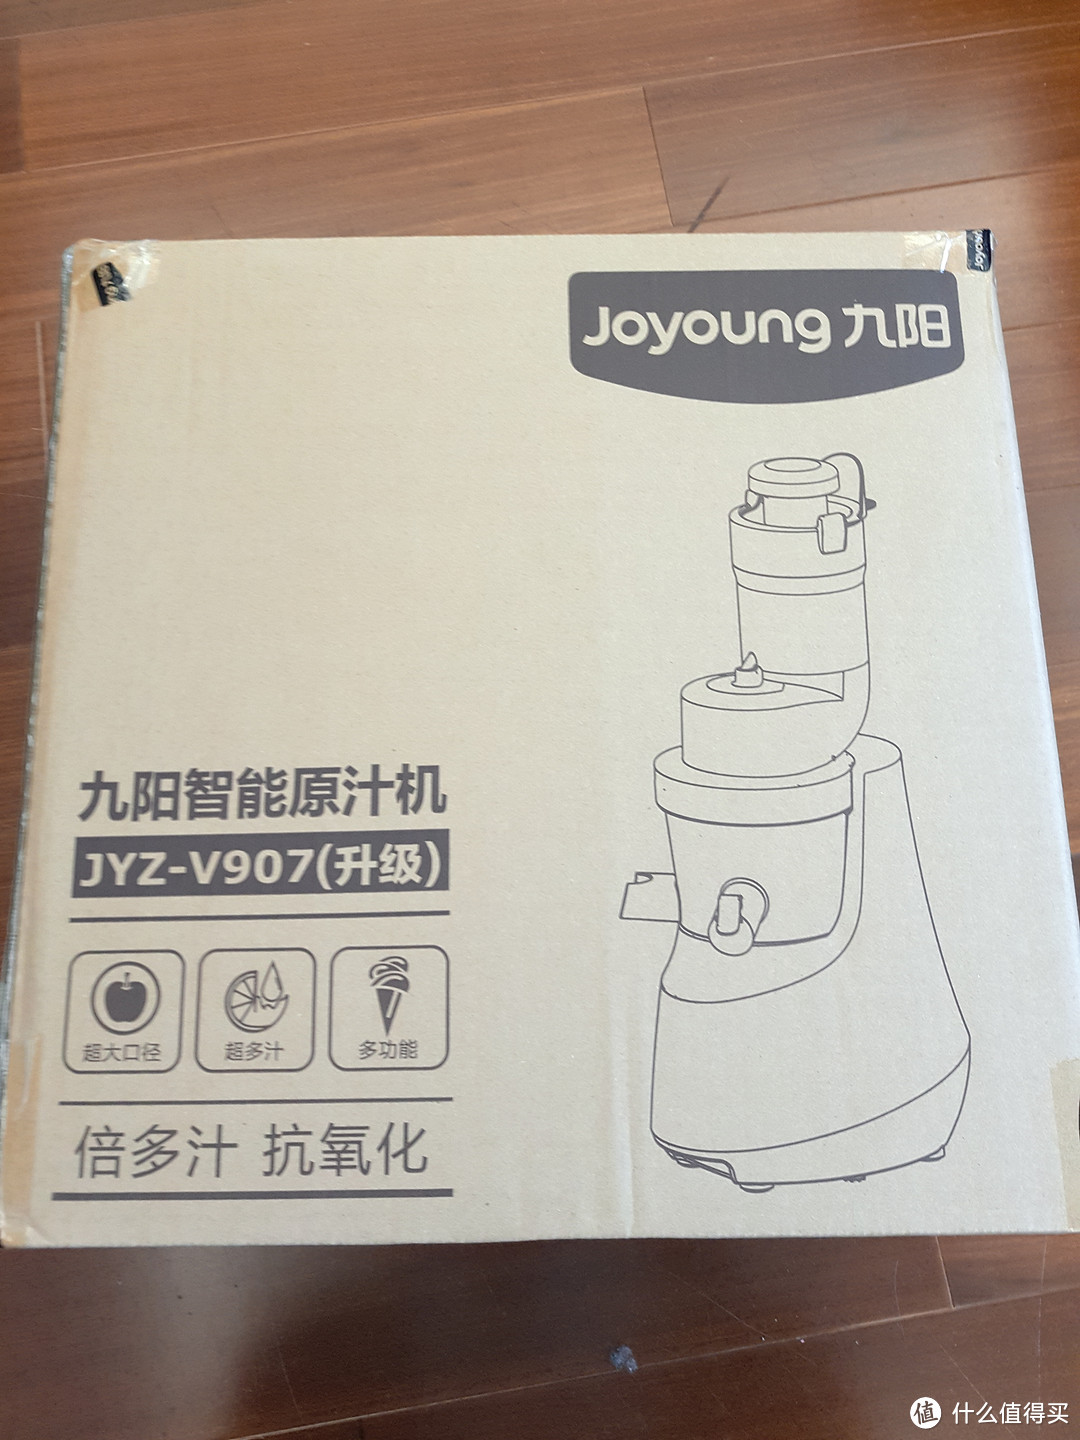 炎炎夏日，来杯果汁 — Joyoung 九阳 JYZ-V907 原汁机